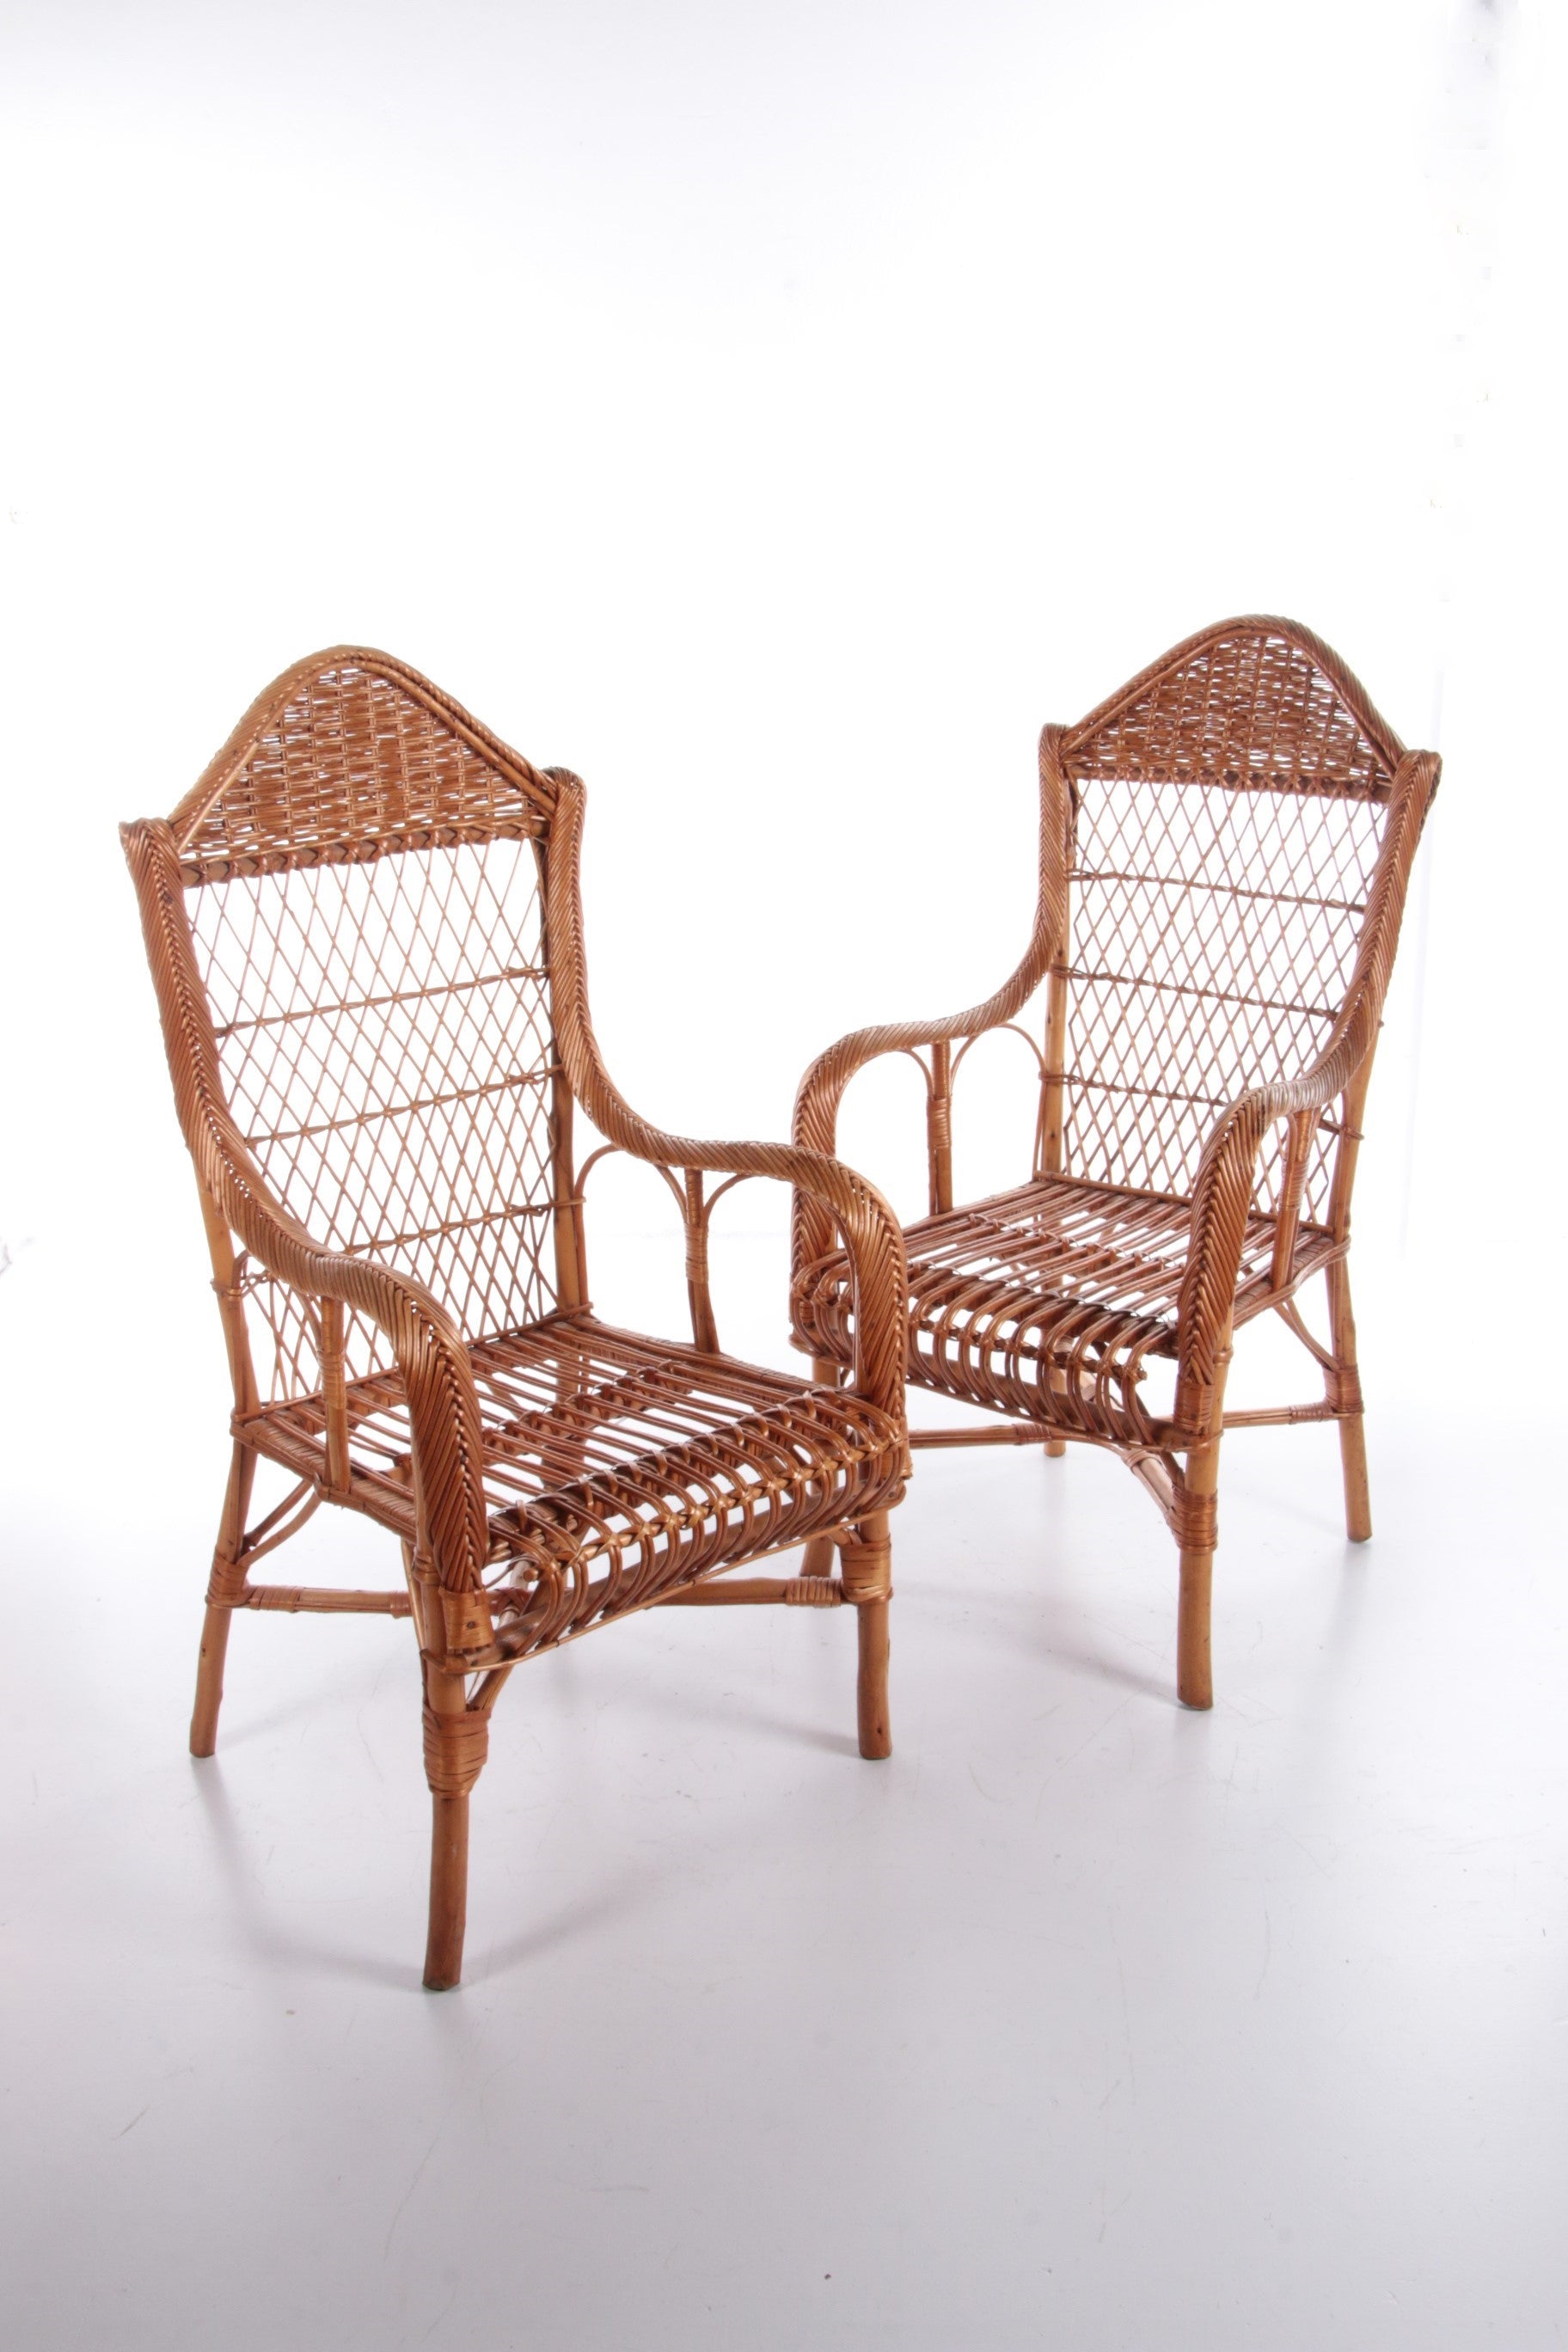 set van 2 Rotan stoelen gemaakt rond 1960s,Nederland. – Timeless-Art